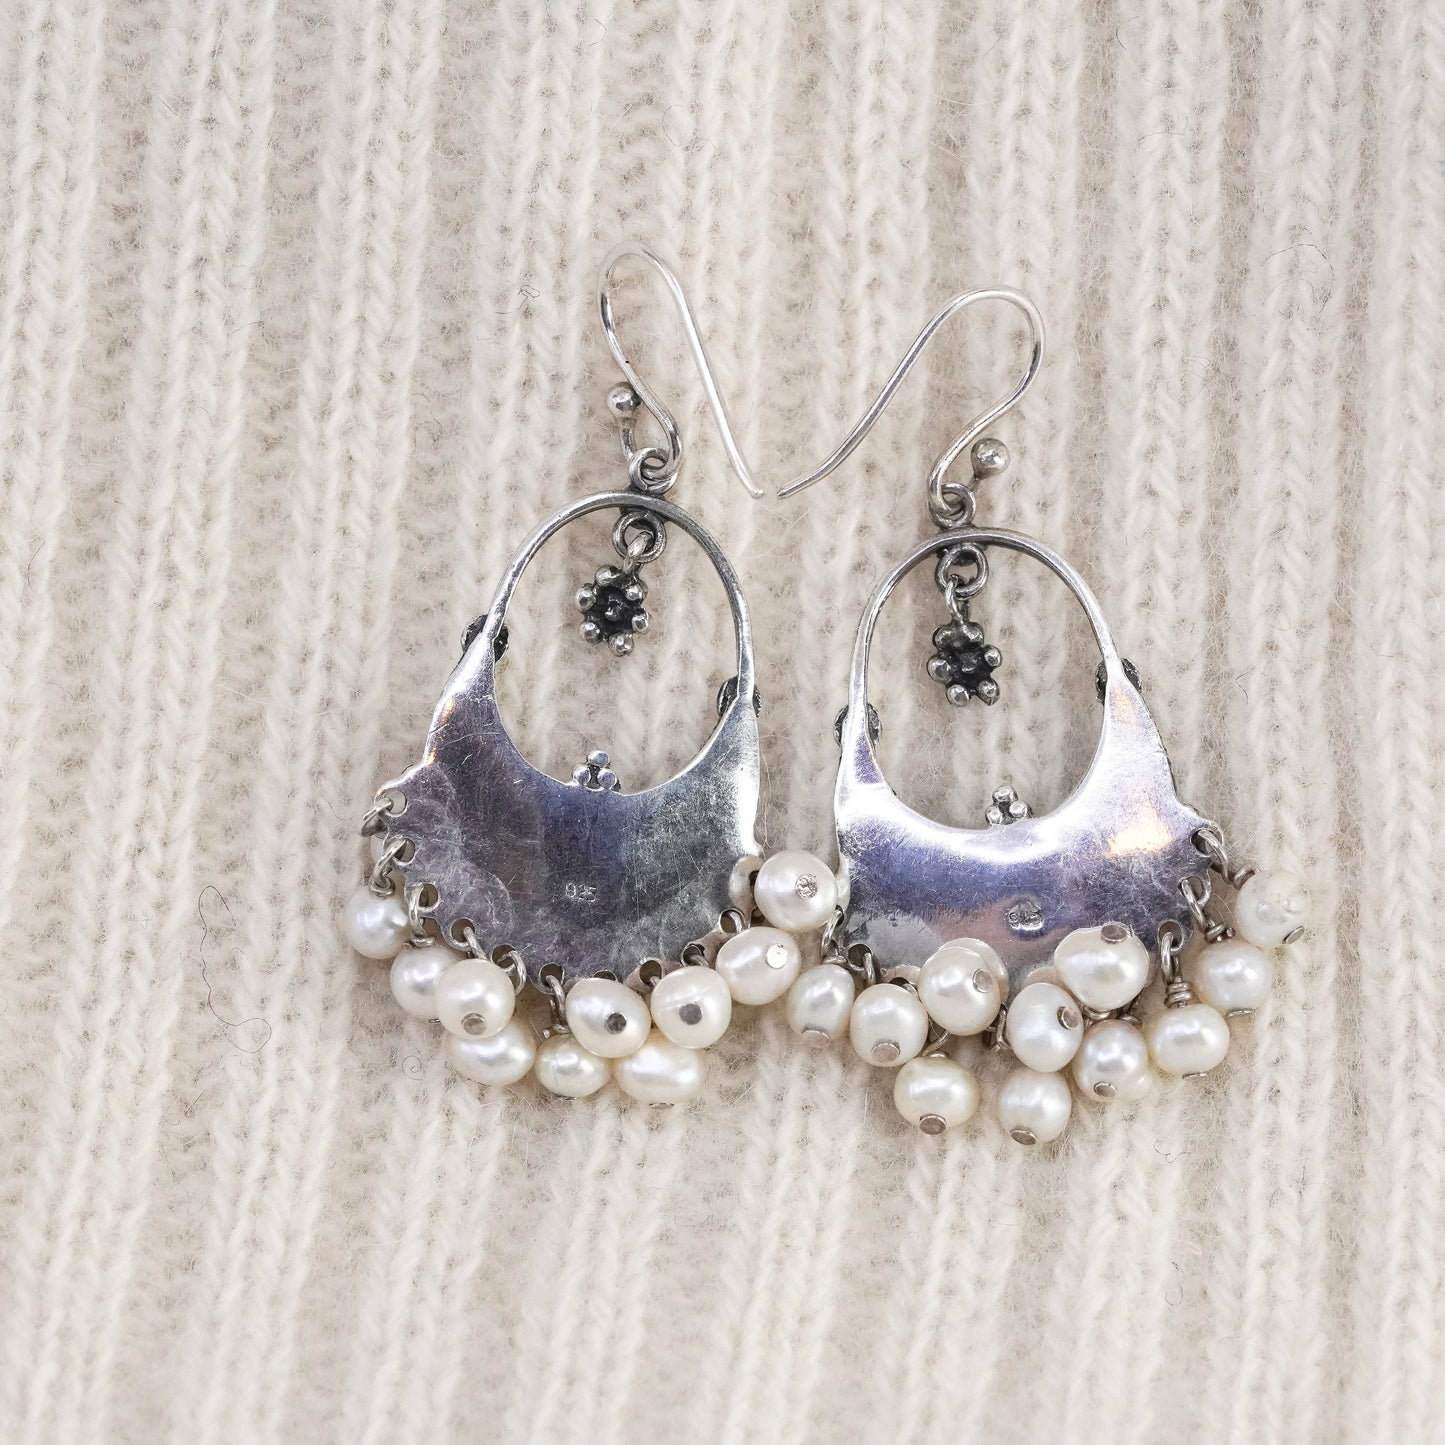 vtg sterling 925 silver handmade earrings with moonstone cluster pearl dangles